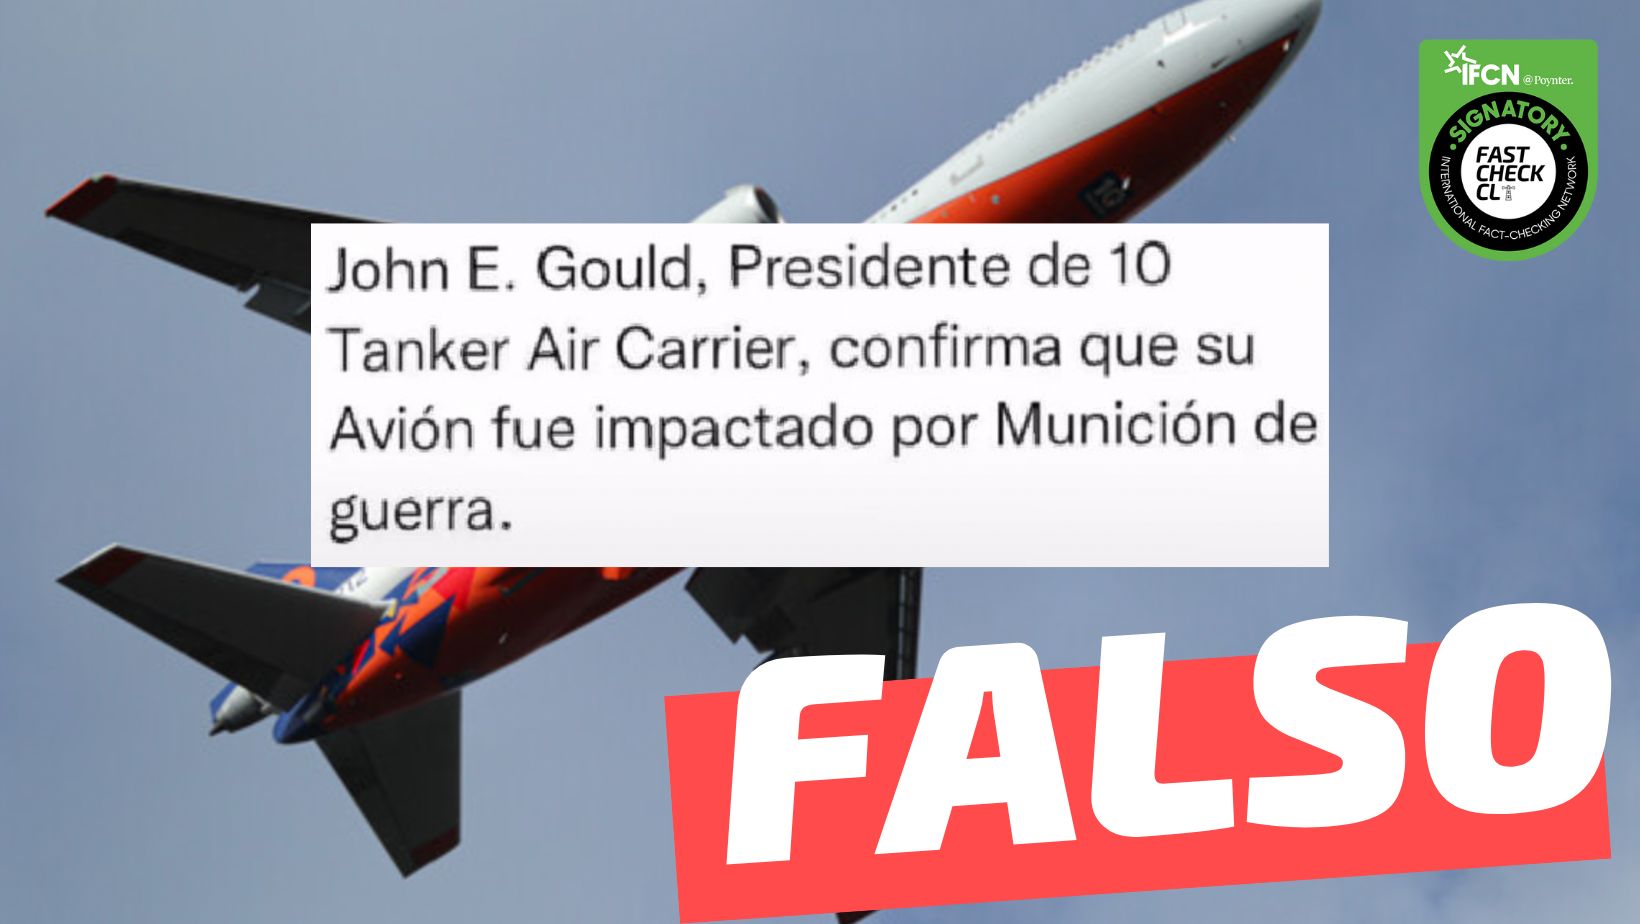 You are currently viewing “John E. Gould, Presidente de 10 Tanker Air Carrier confirma que su avión fue impactado por munición de guerra”: #Falso